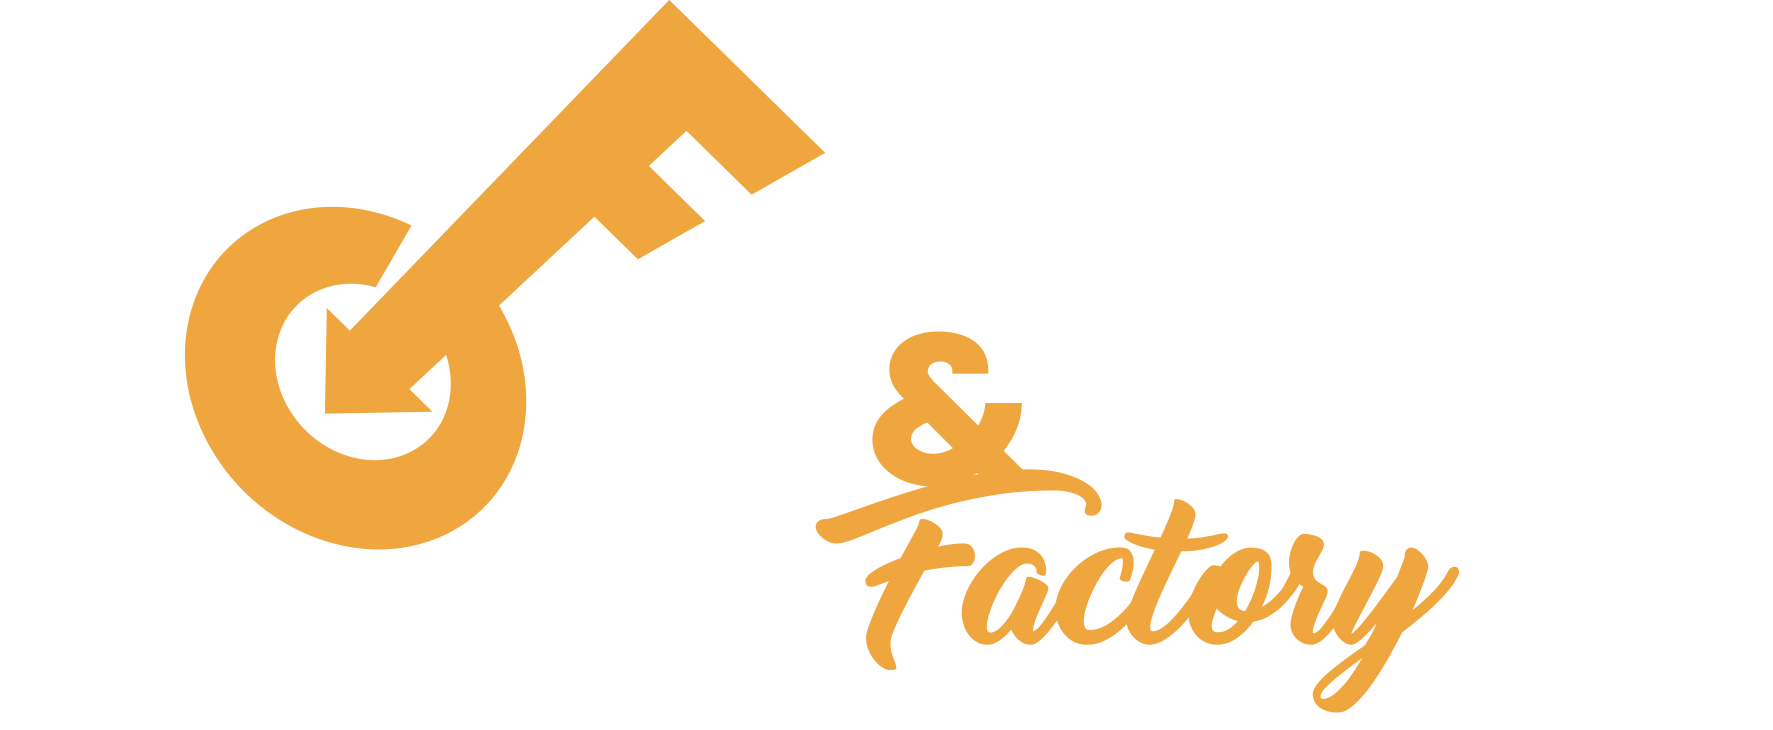 Comics&Games Factory